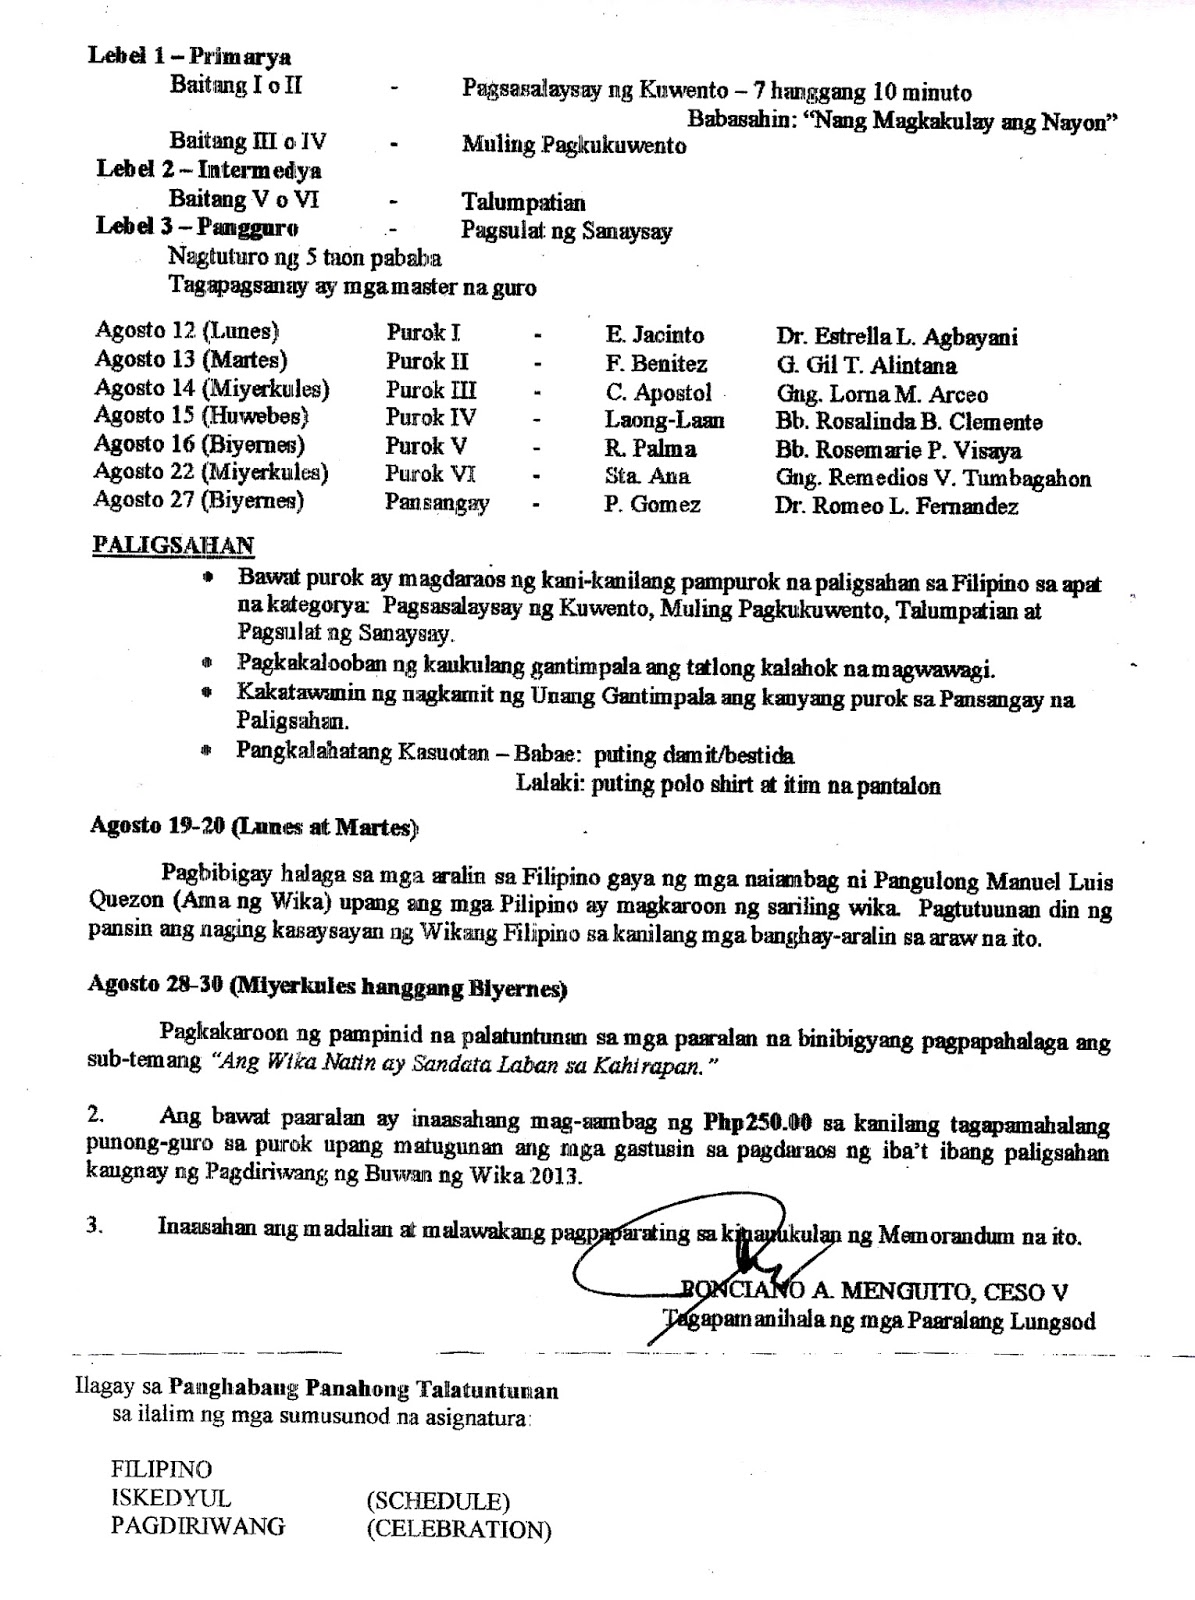 Department of Education Manila: Division Memorandum No. 392